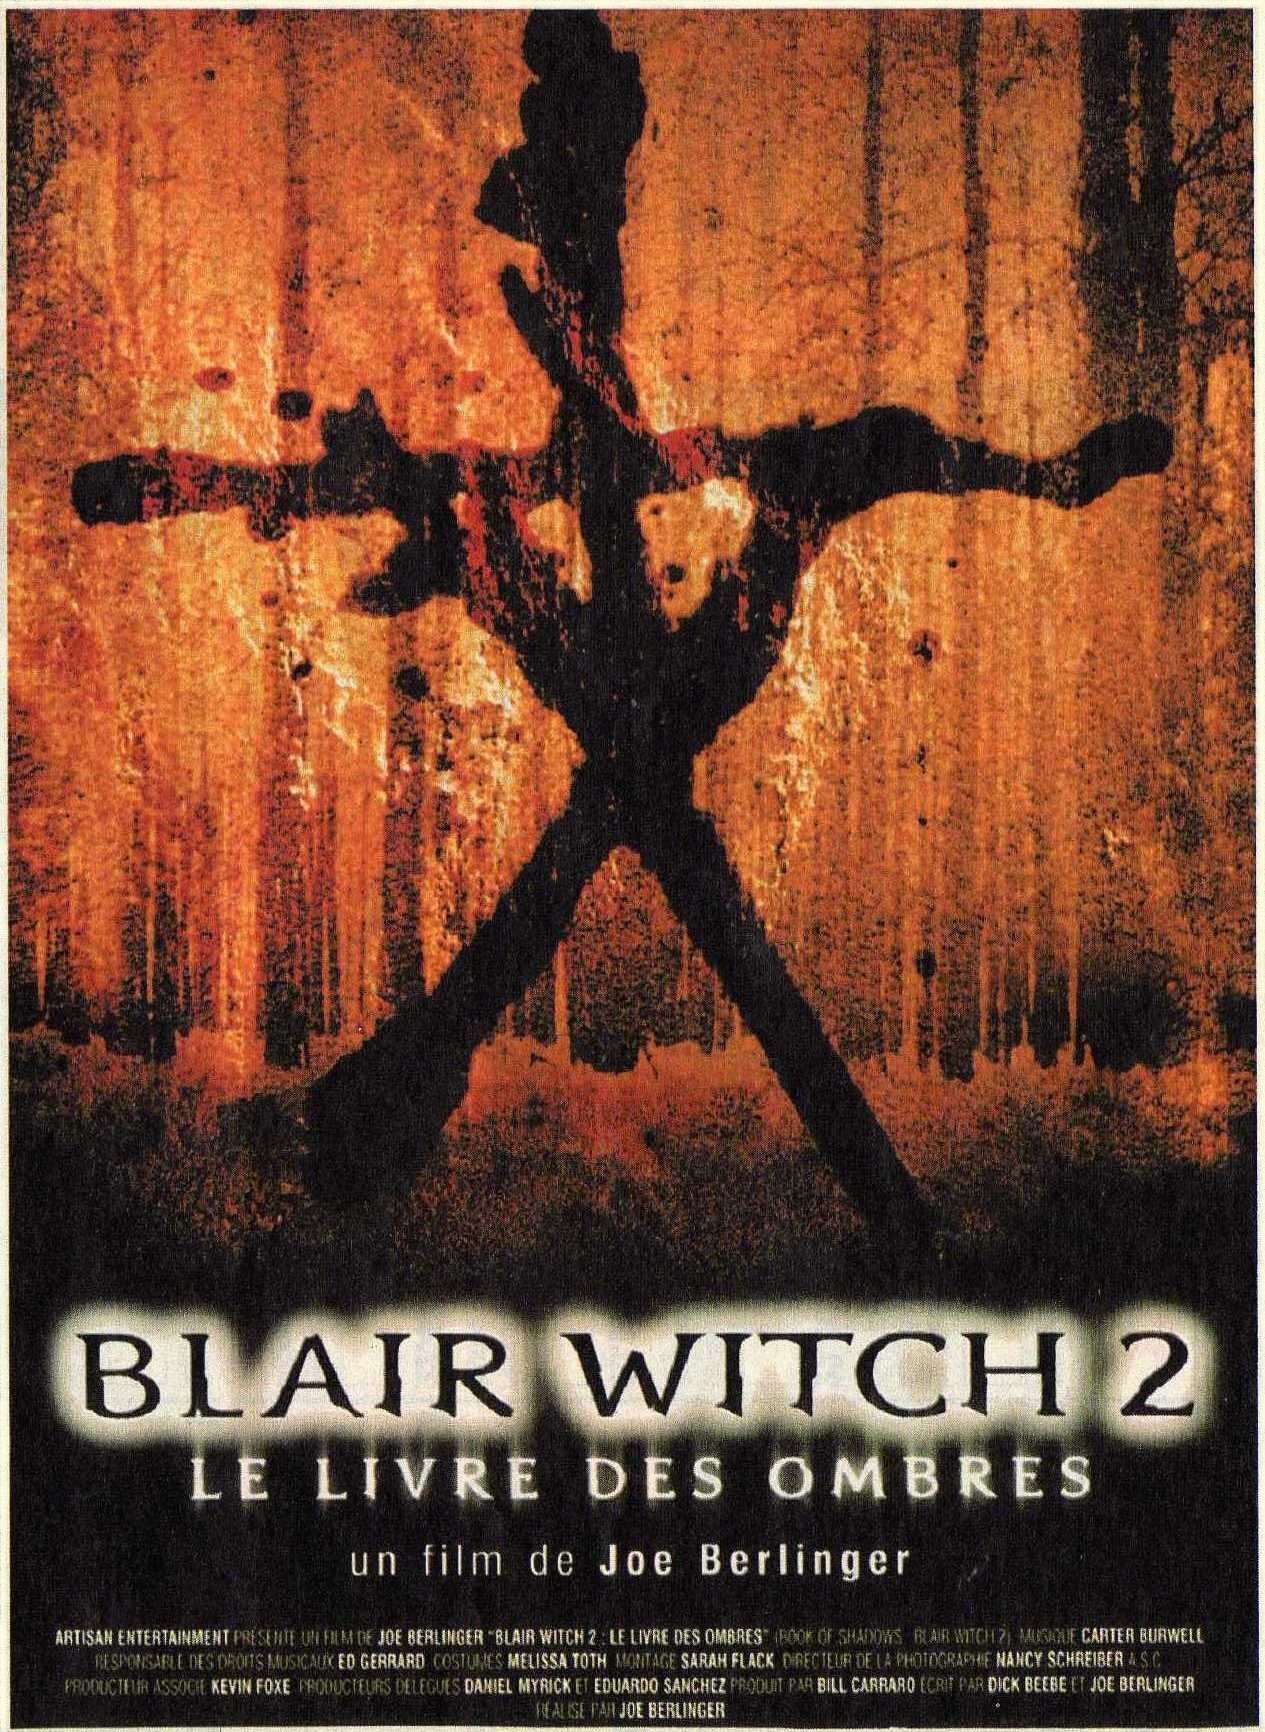 Le Projet Blair Witch 2 : Le Livre des ombres